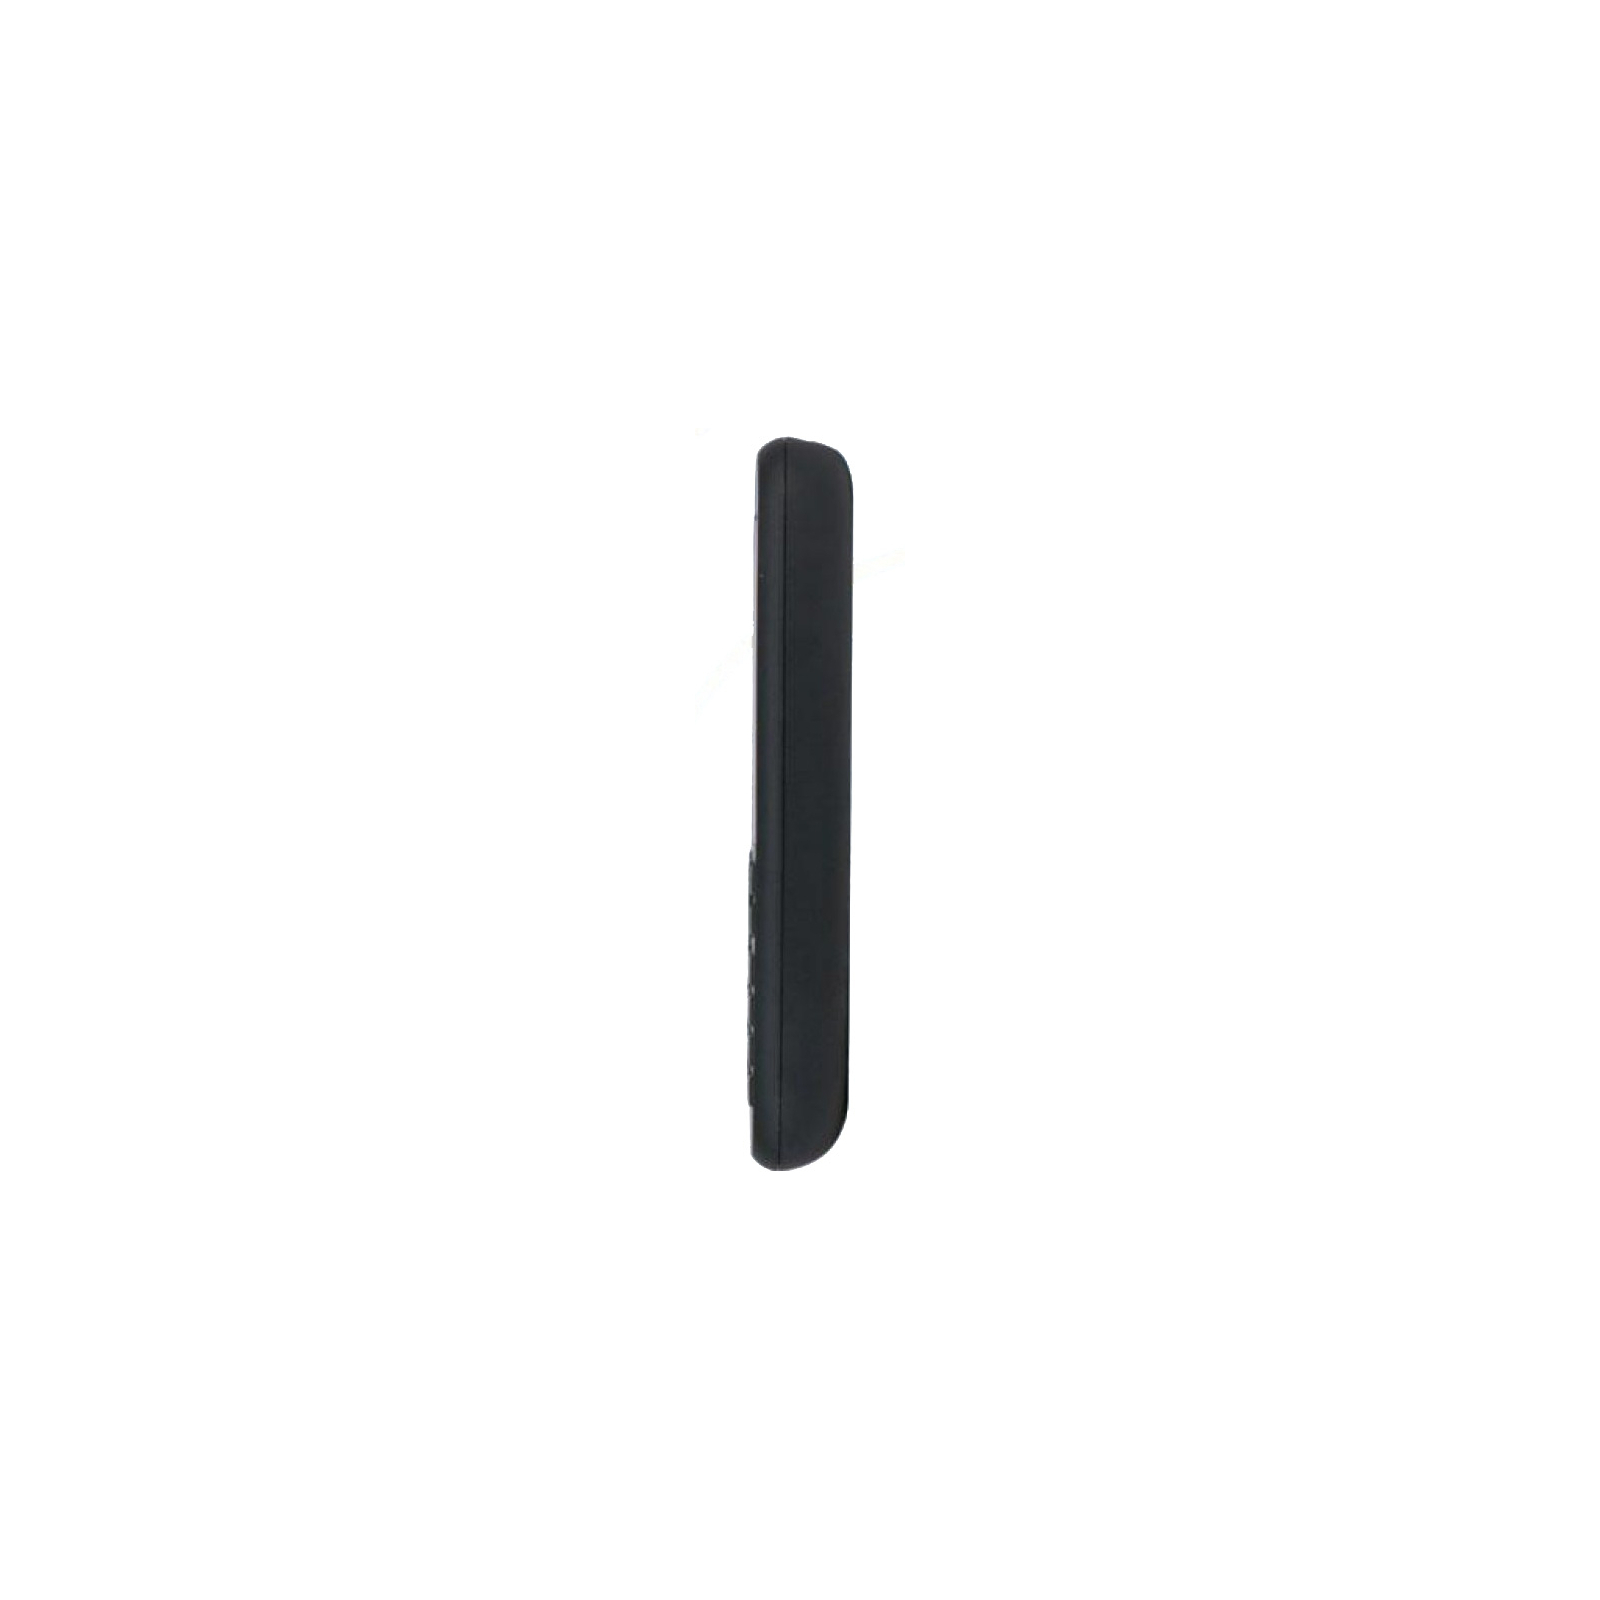 Мобильный телефон Nokia 105 DS 2019 Black (16KIGB01A01) изображение 4